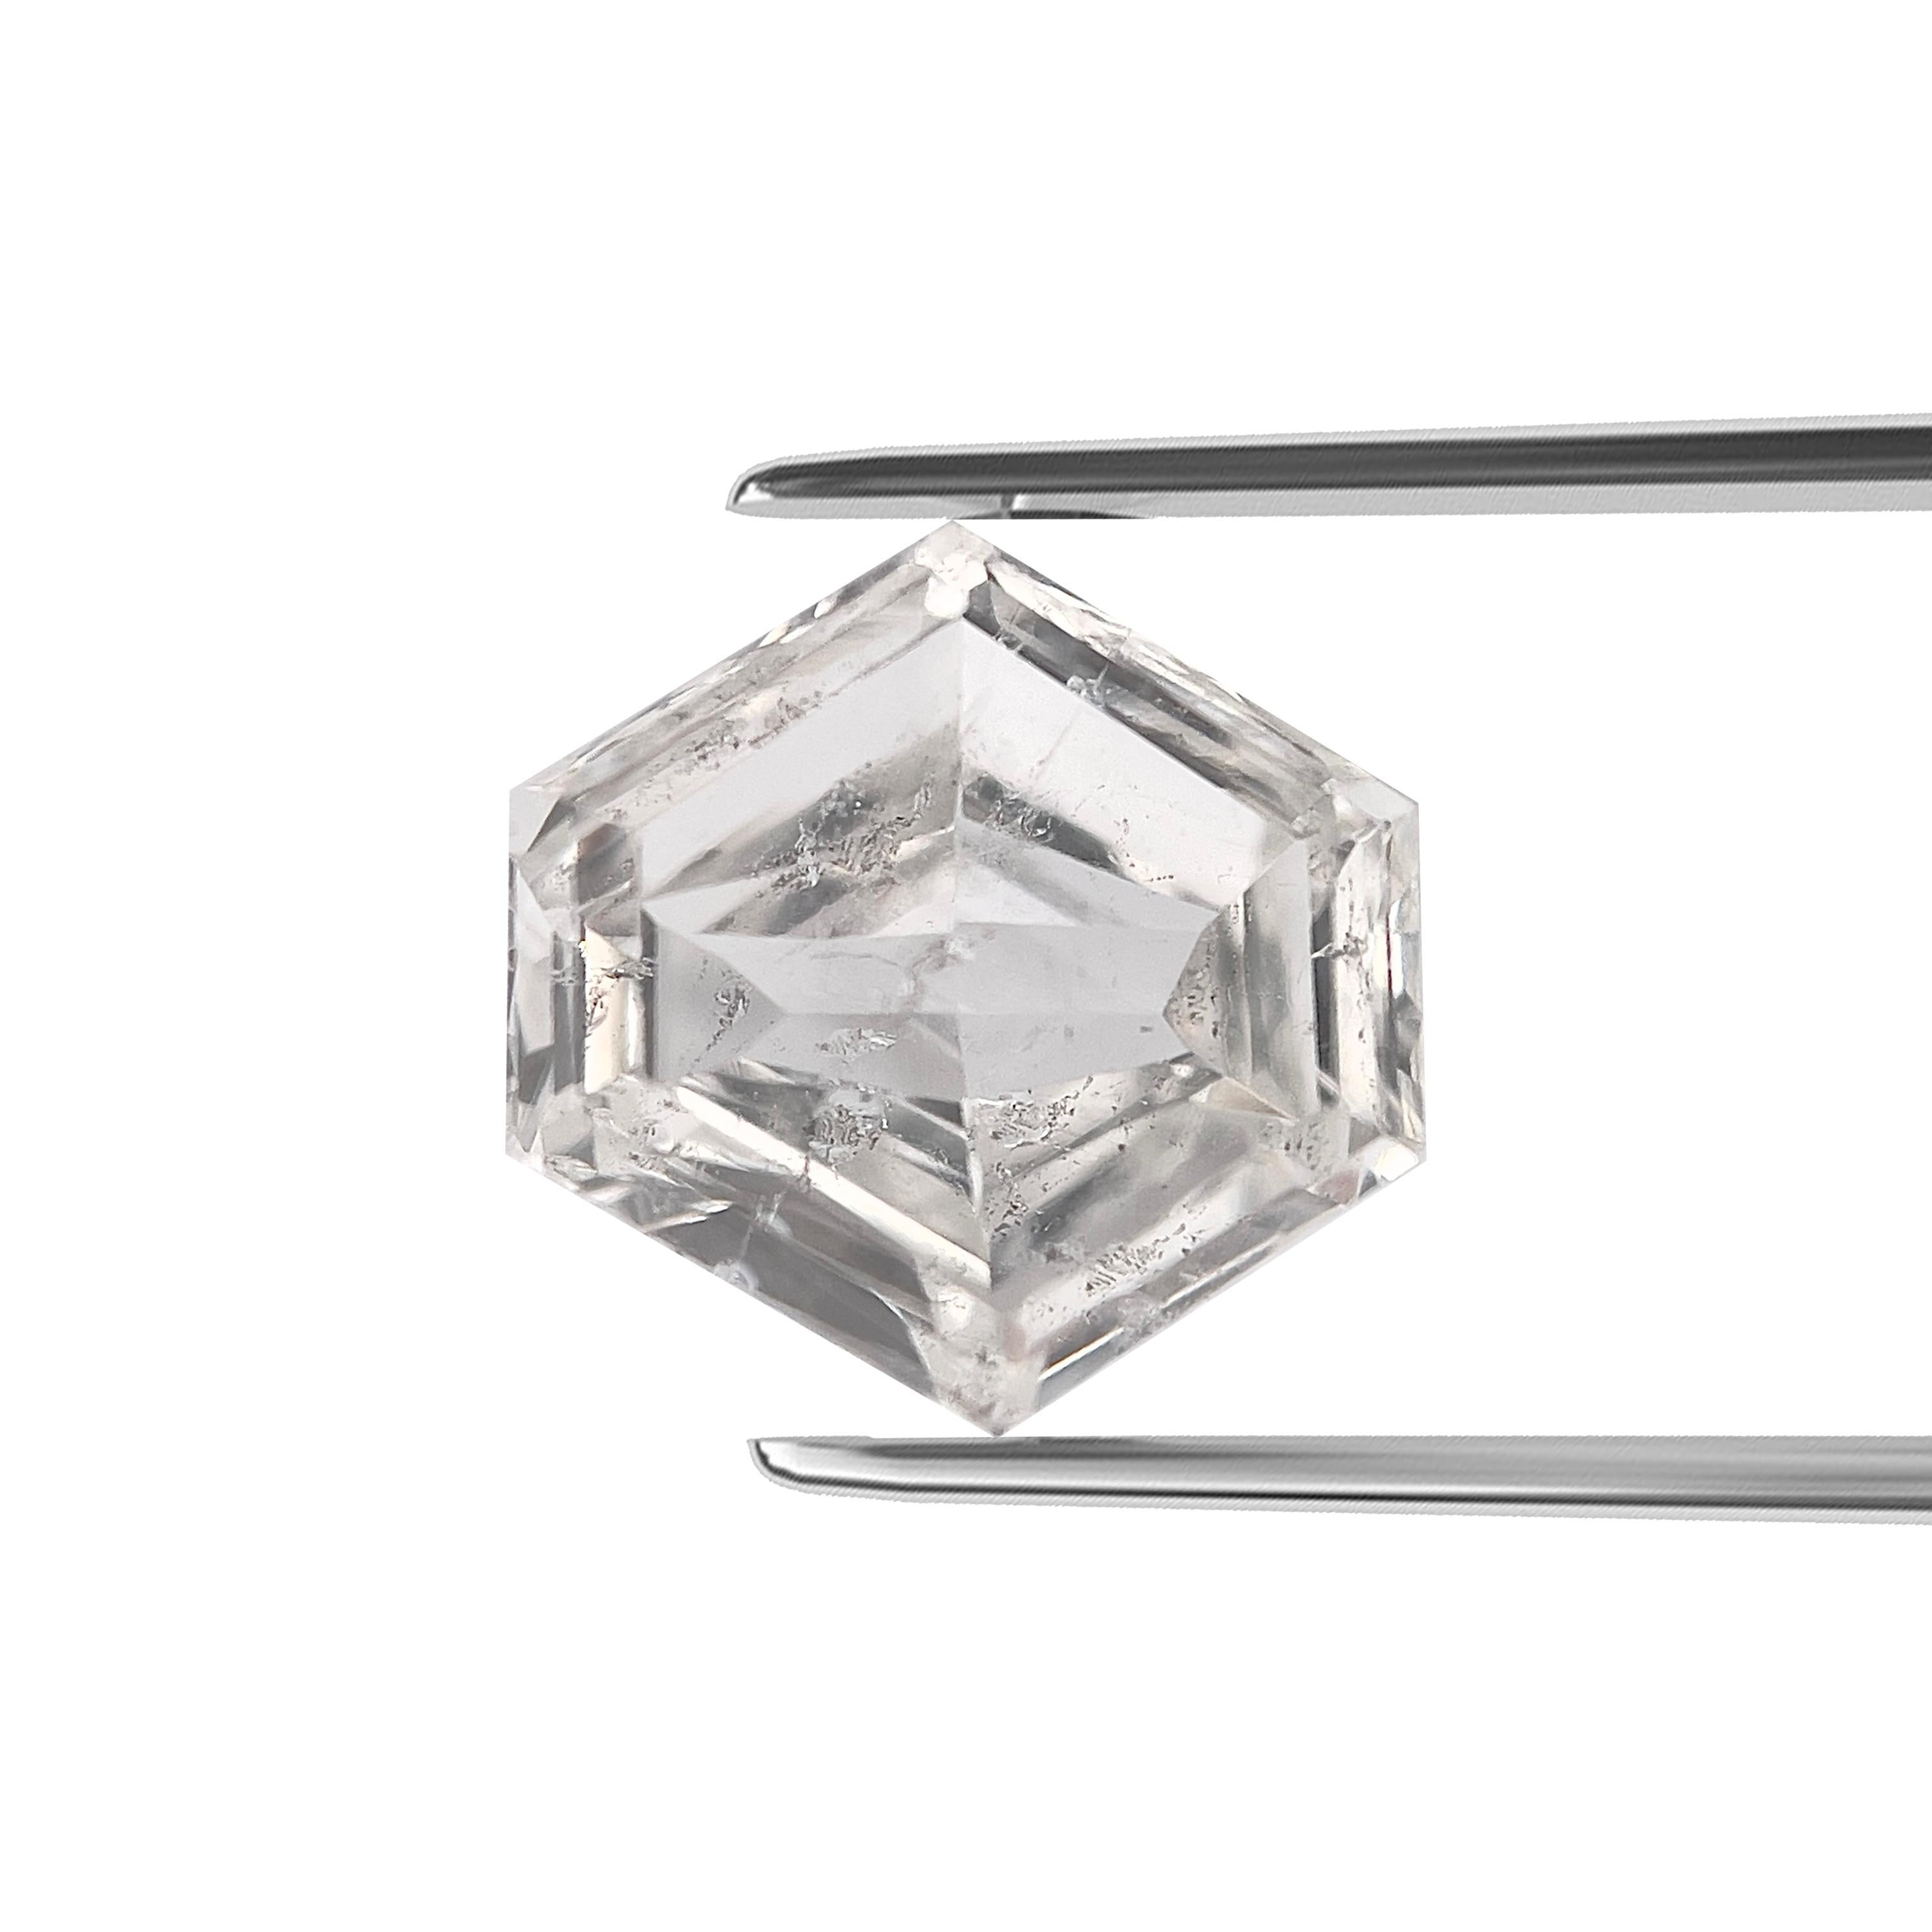 ARTIKELBEZEICHNUNG

ID-NUMMER: 55532
Form des Steins: Sechseckige Form
Diamant Gewicht: 1.00 CT
Klarheit: I1
Farbe: F
Abmessungen: 6,79 x 6,80 x 2,71 mm
Unser Preis: $3220.00
Schätzungspreis: $4830.00


Diese echten Diamanten werden von unserem